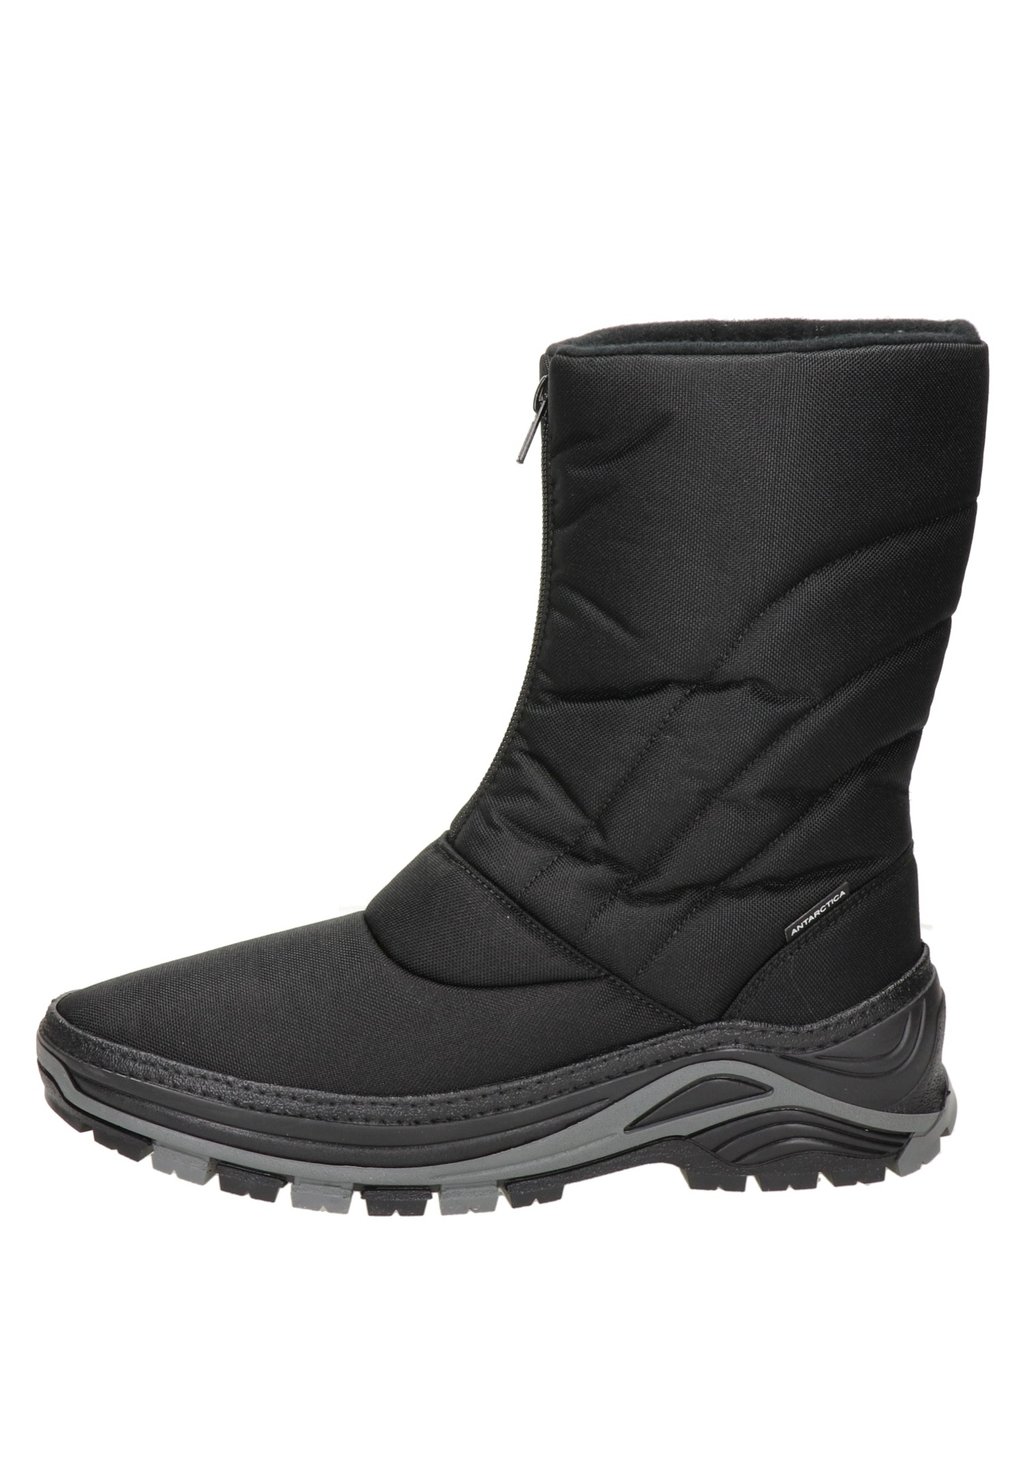 Зимние сапоги Antarctica Boots, черный keegan claire antarctica